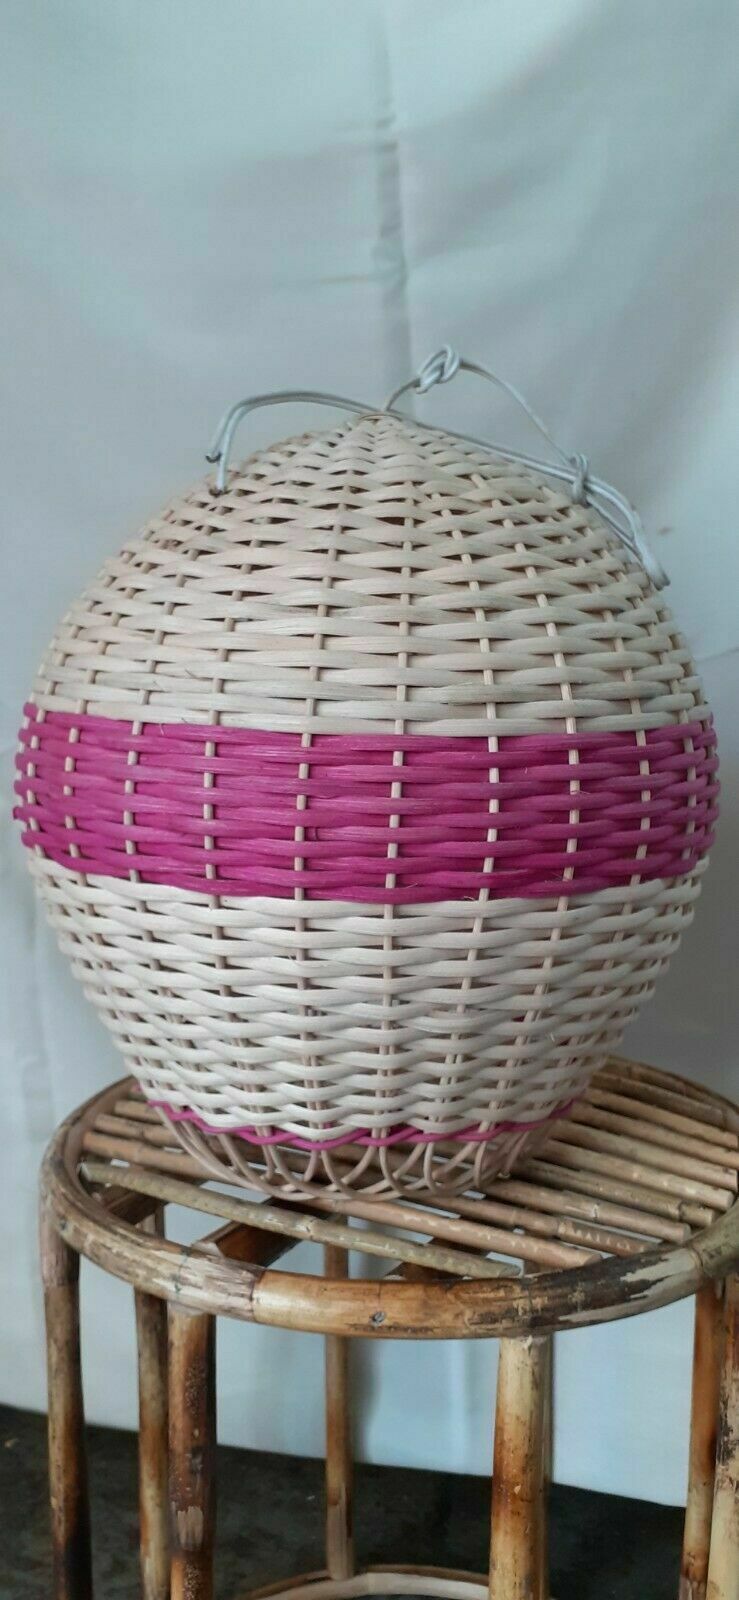 Primary image for Ratán tejido a mano mimbre rosa forma de globo de aire 2 piezas set lámpara...